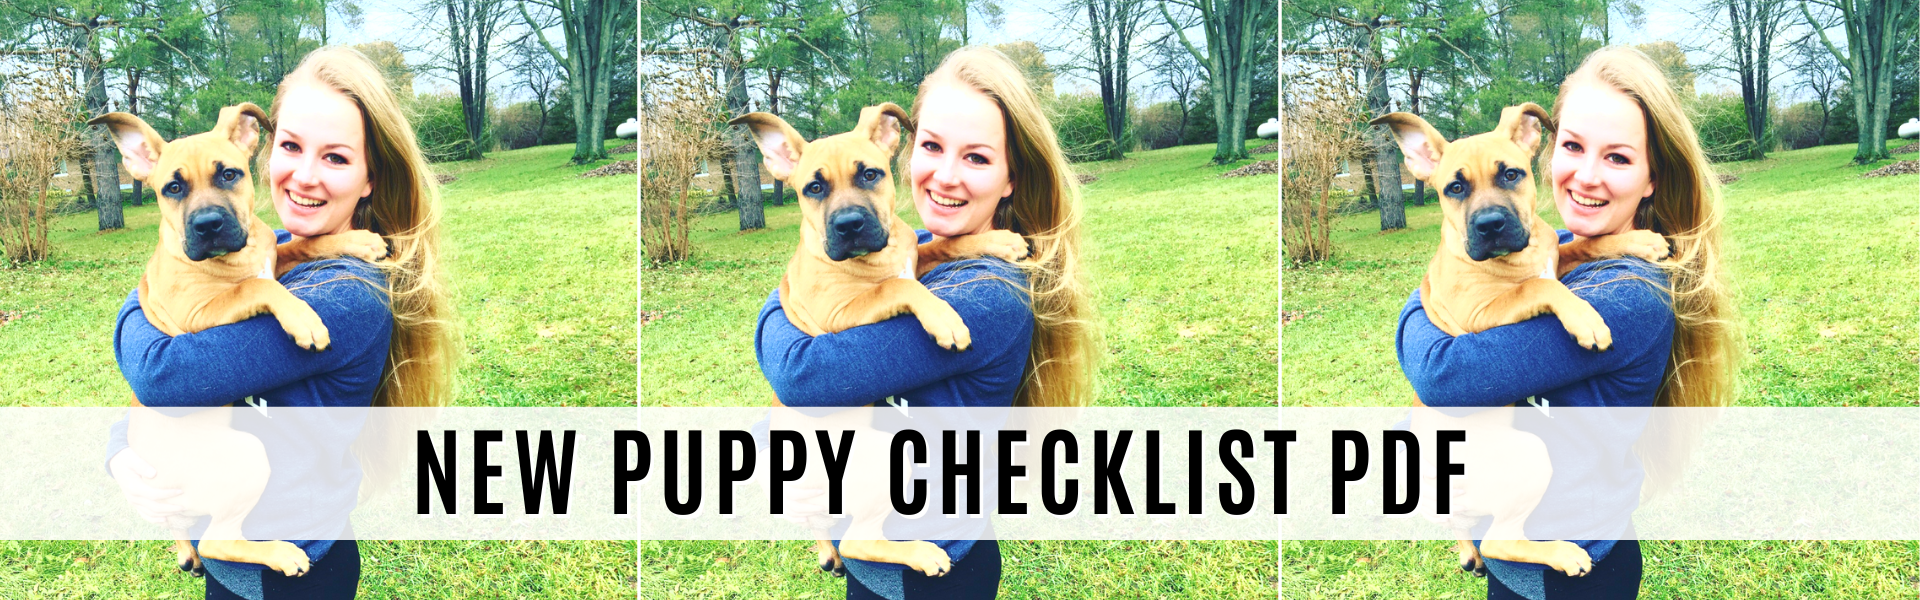 new puppy checklist pdf